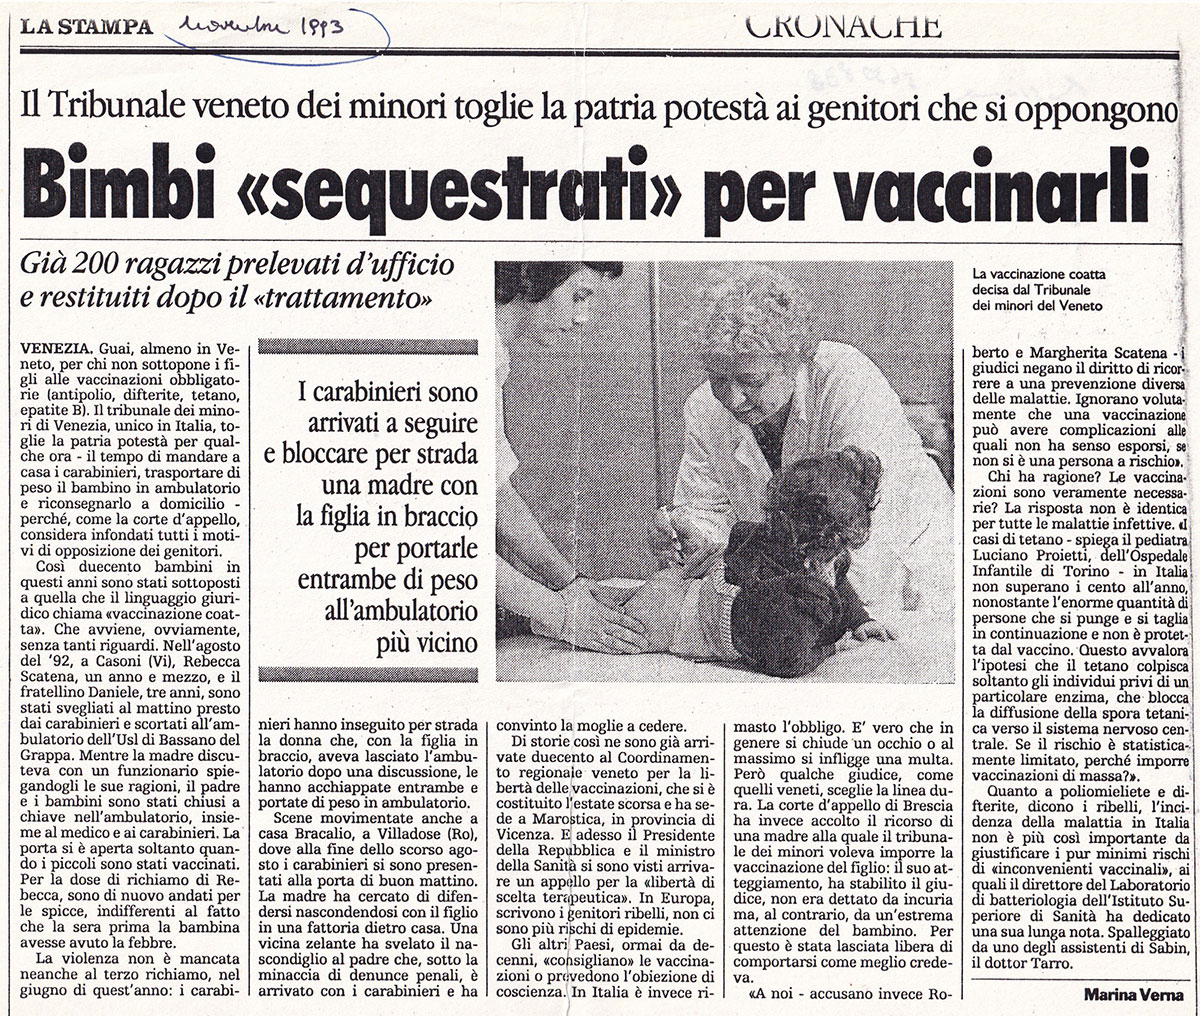 Dzieci „zachwycone” w celu zaszczepienia. La Stampa, listopad 1993